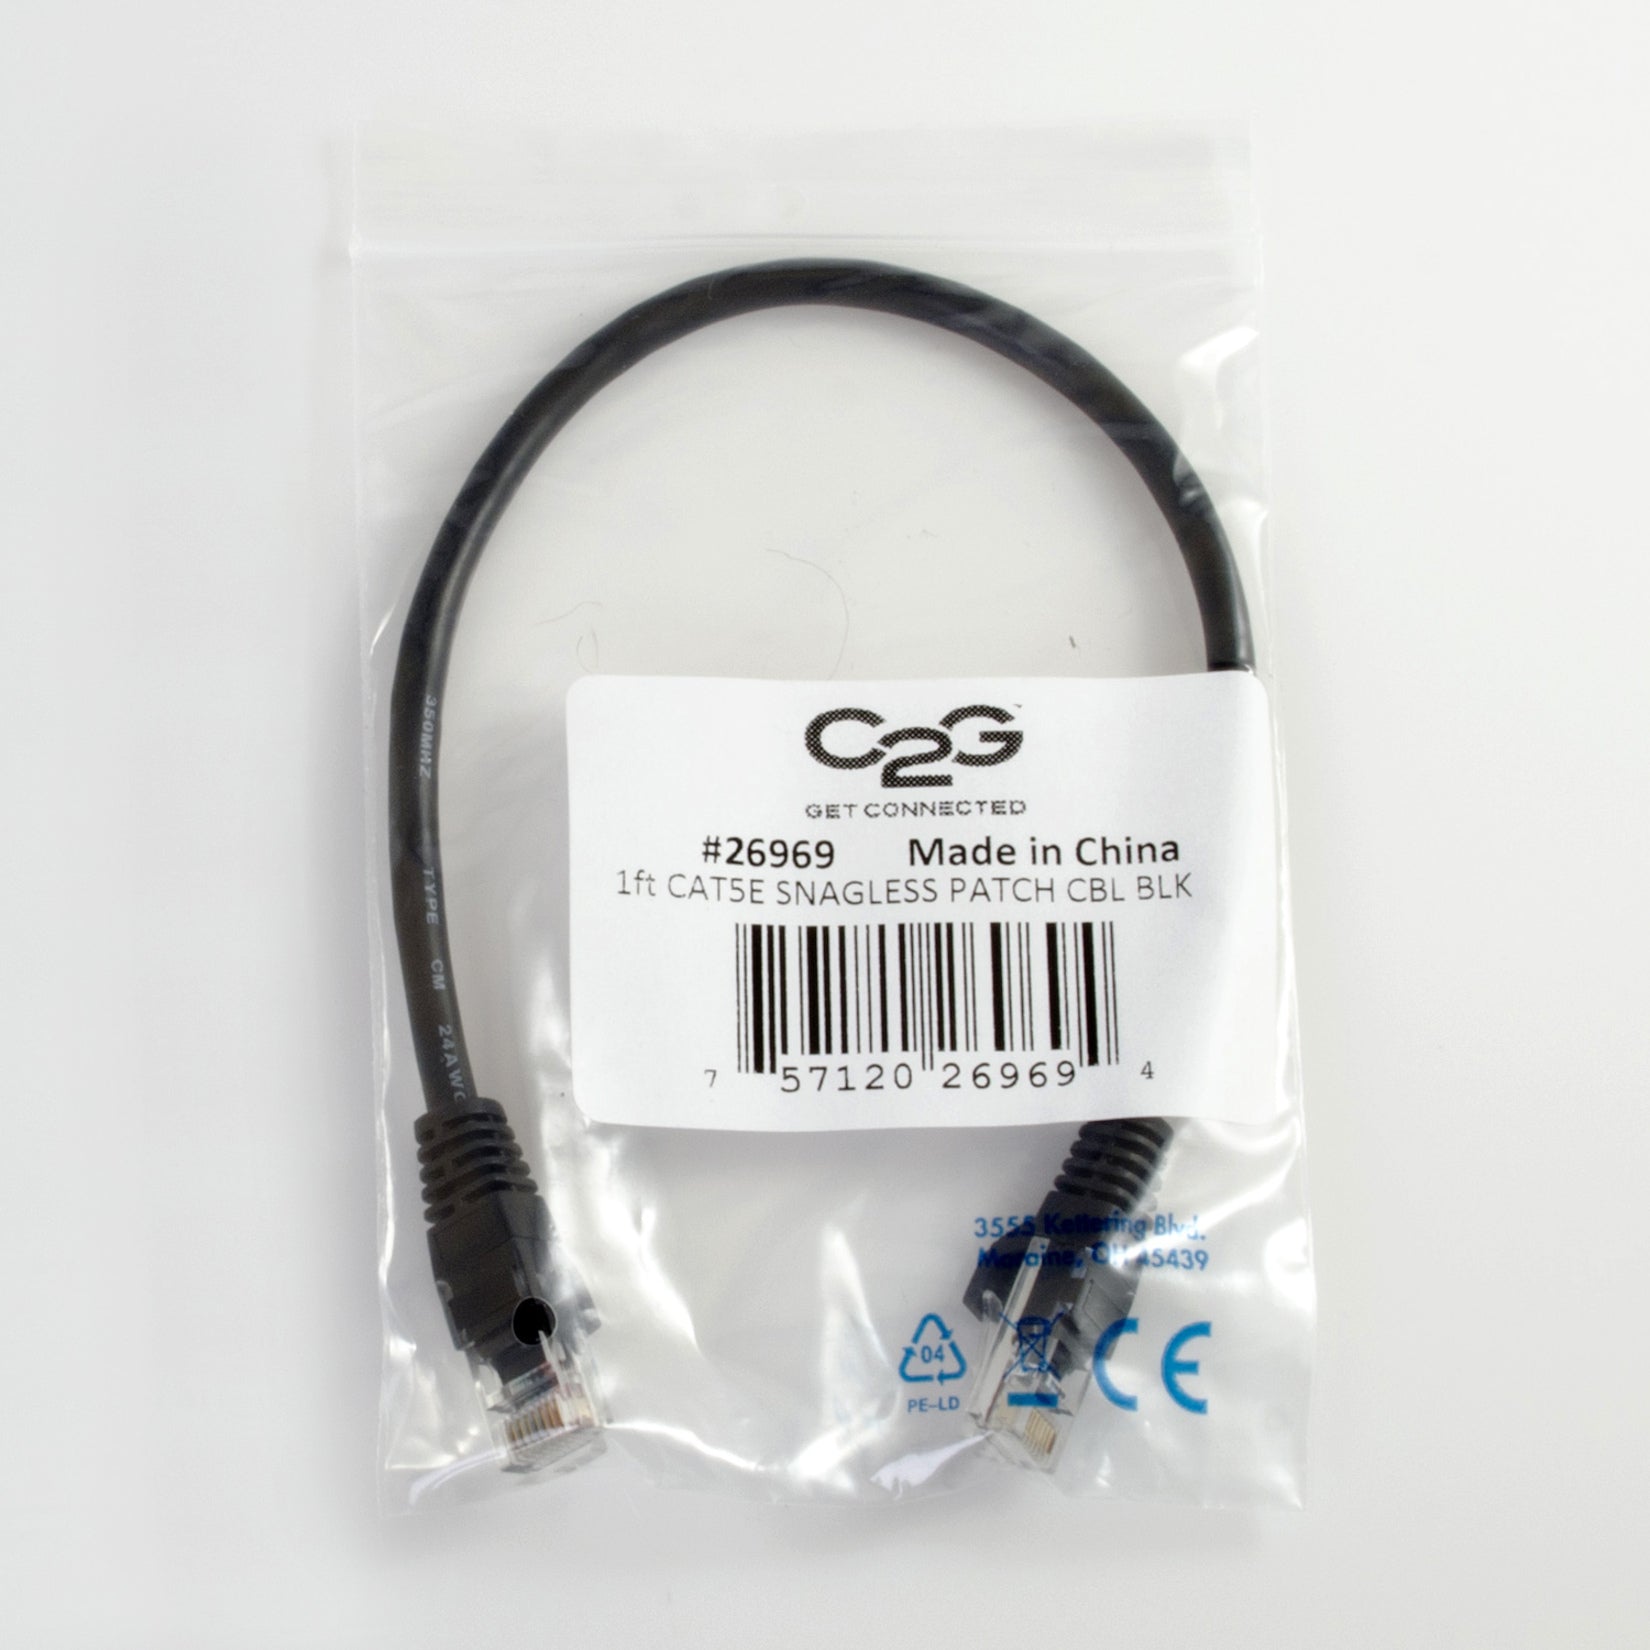 C2G 26969 1ft Cat5e Unshielded Ethernet Cable, Black, Lifetime Warranty